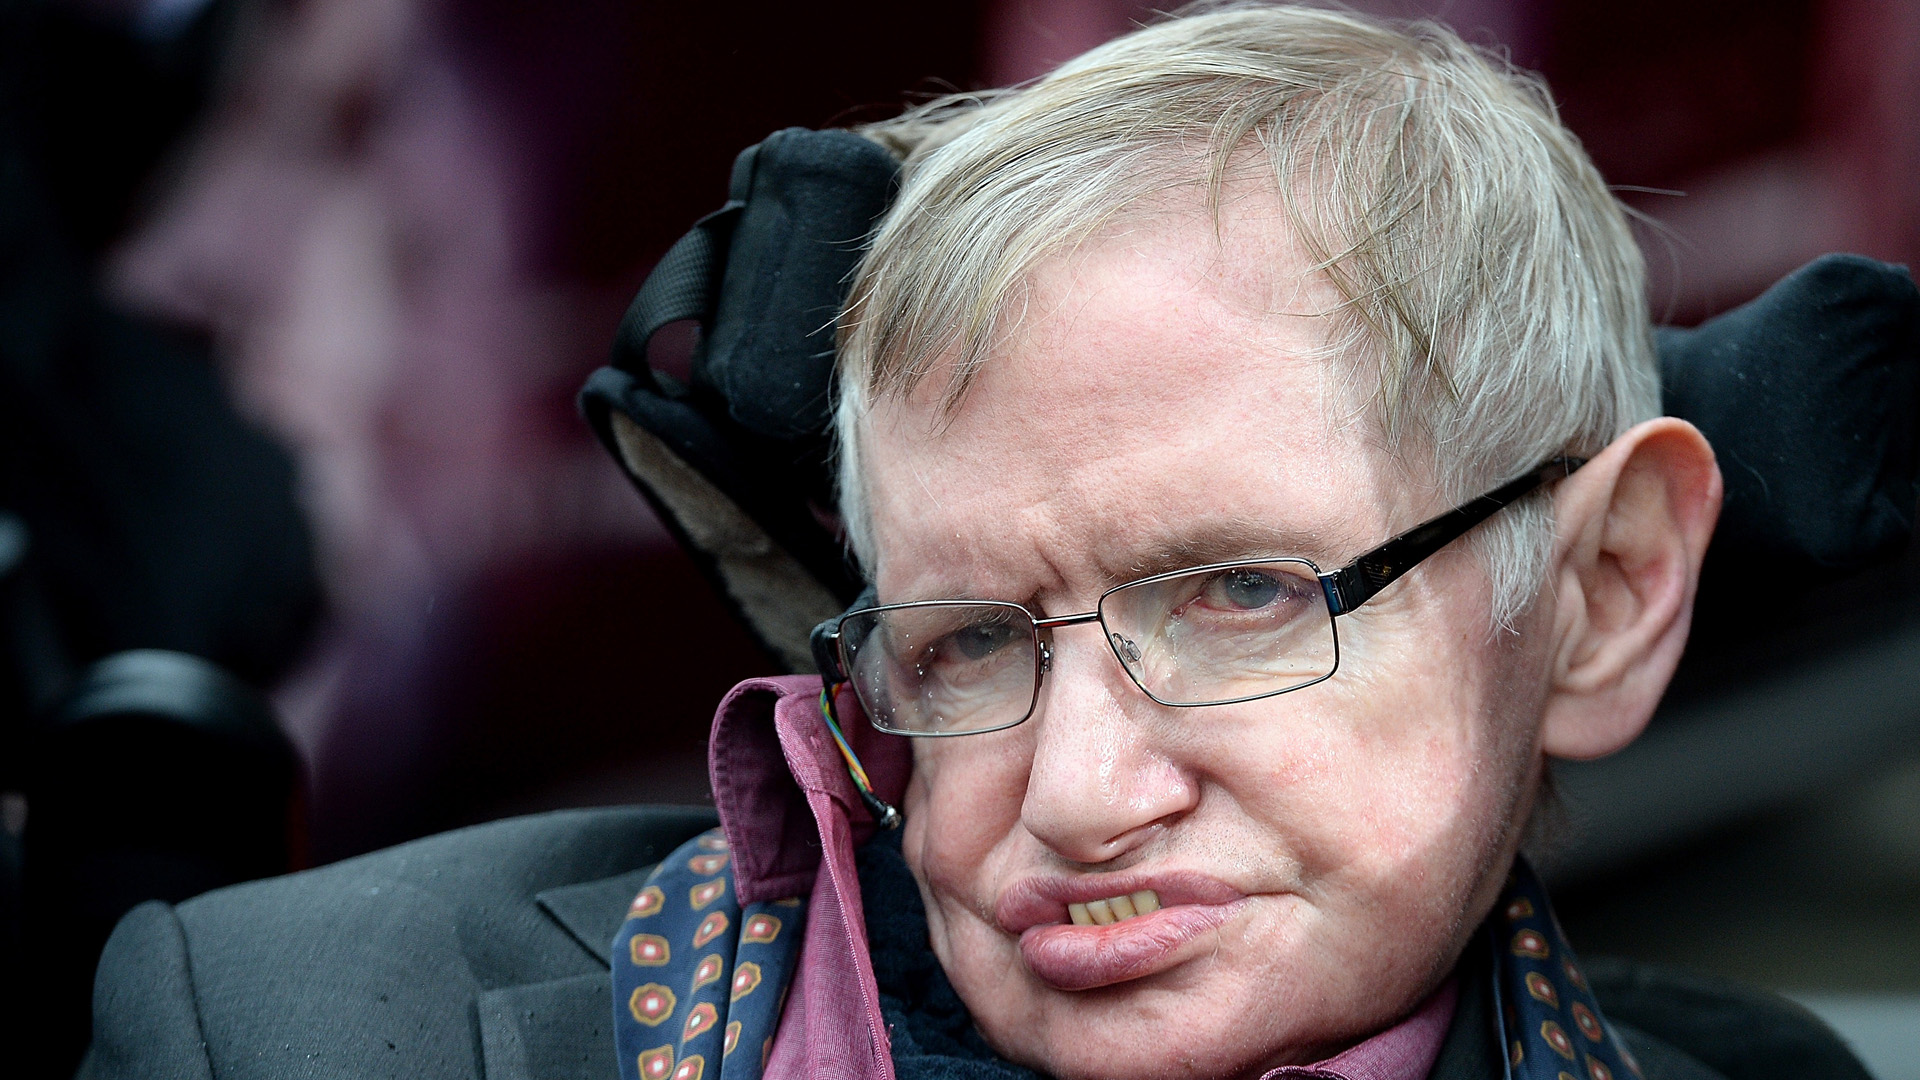 FLOOD - Stephen Hawking Is Glastonbury's True Headliner